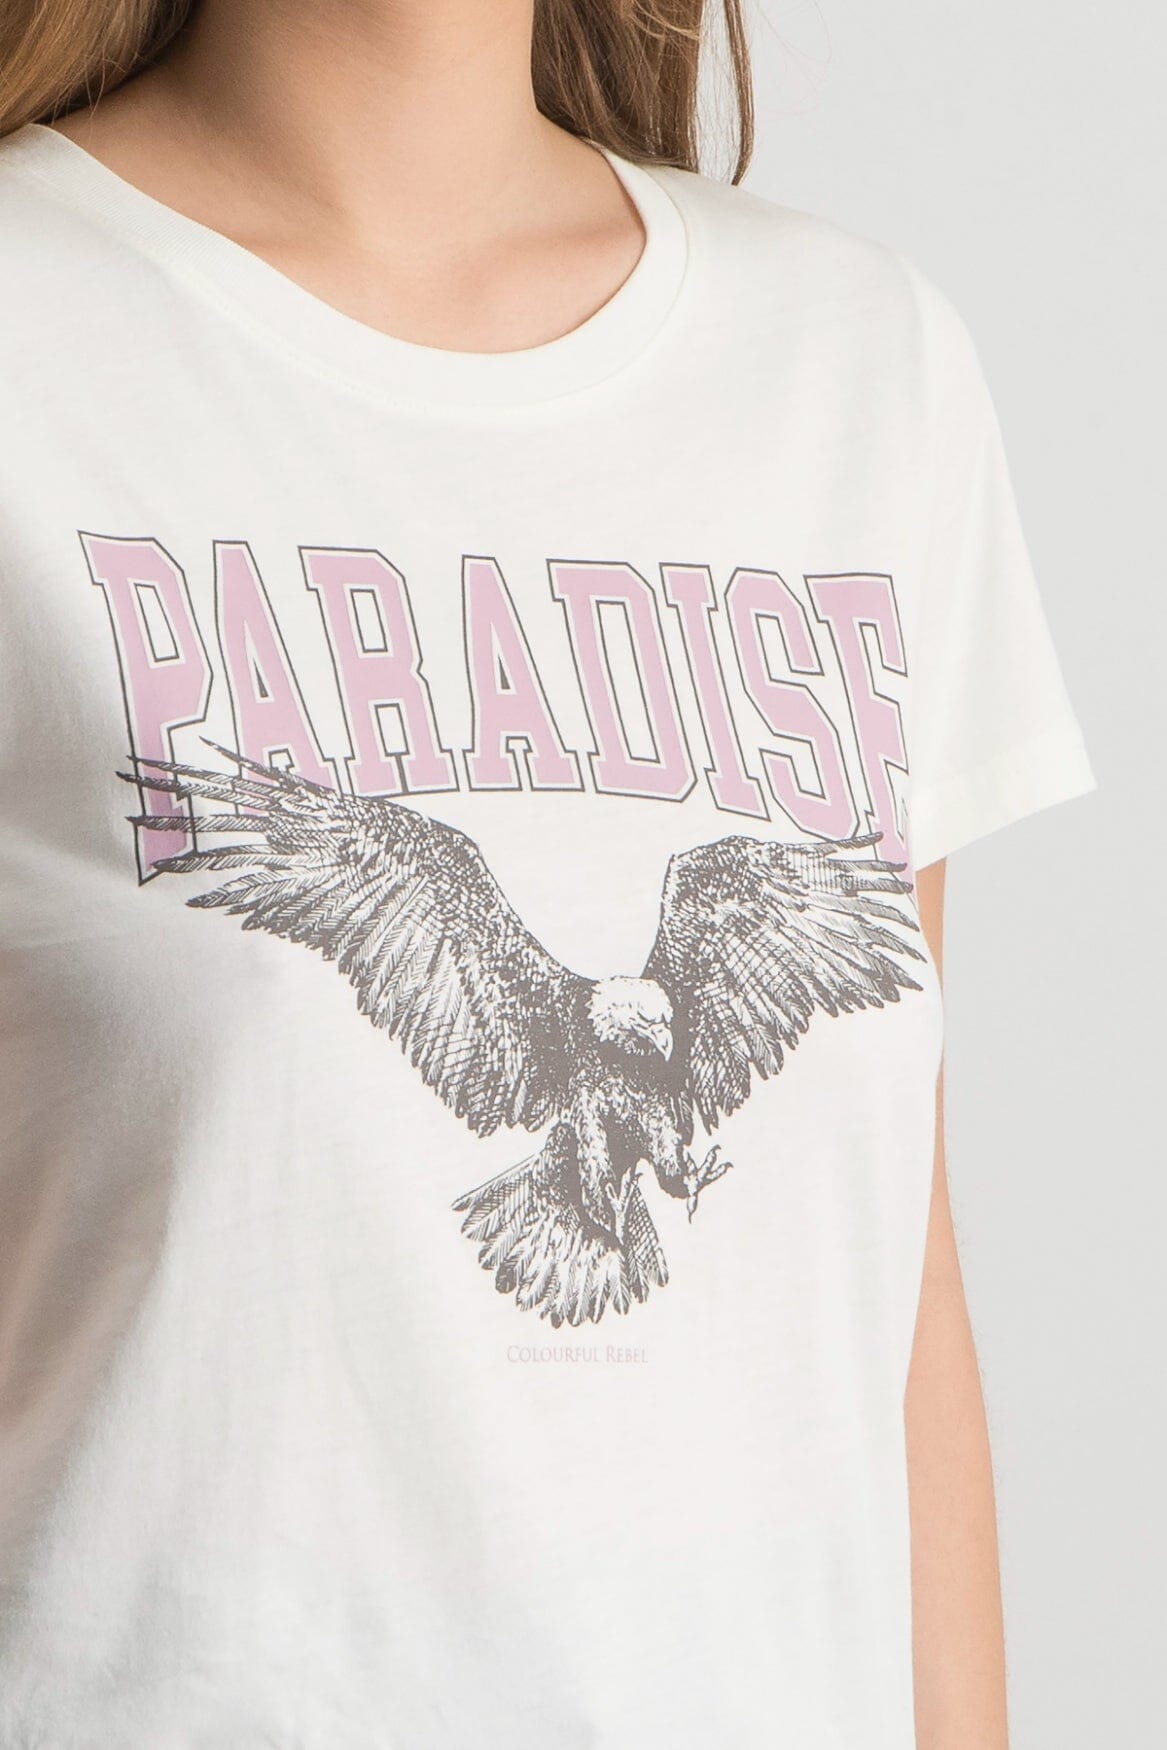 Colourful Rebel Paradise Eagle Classic Tee | Light off white 